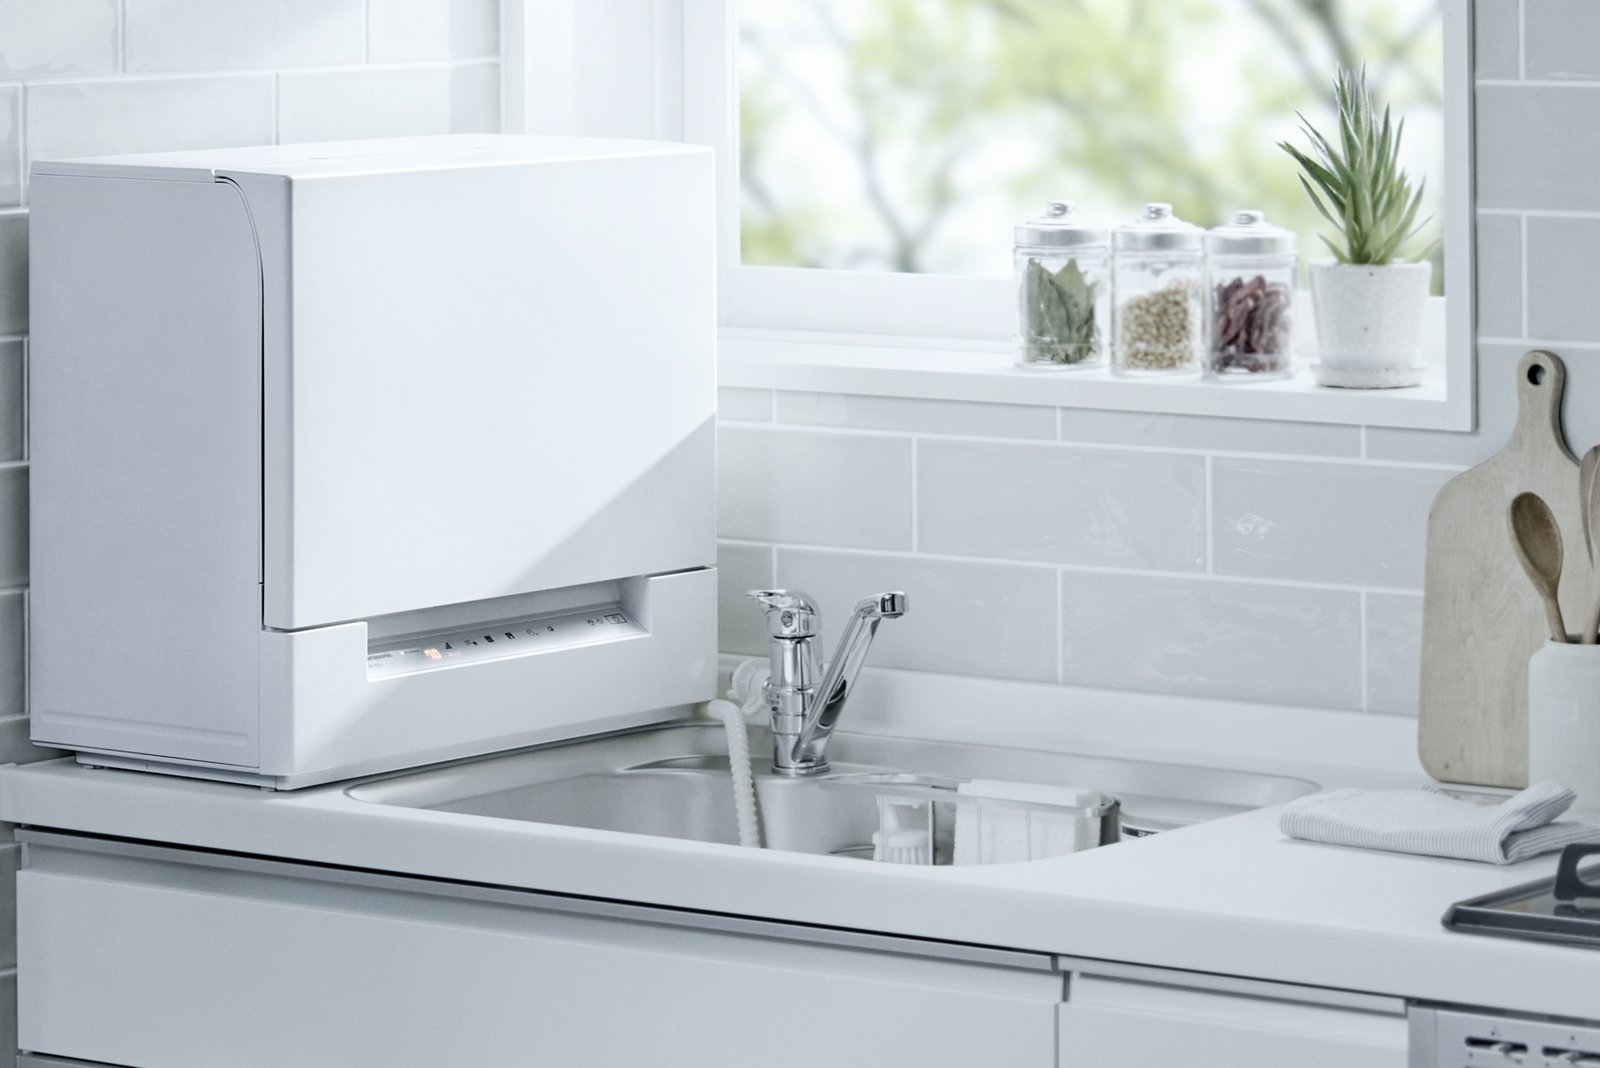 卓上型食器洗い乾燥機「スリム食洗機」NP-TSK1 設置イメージ